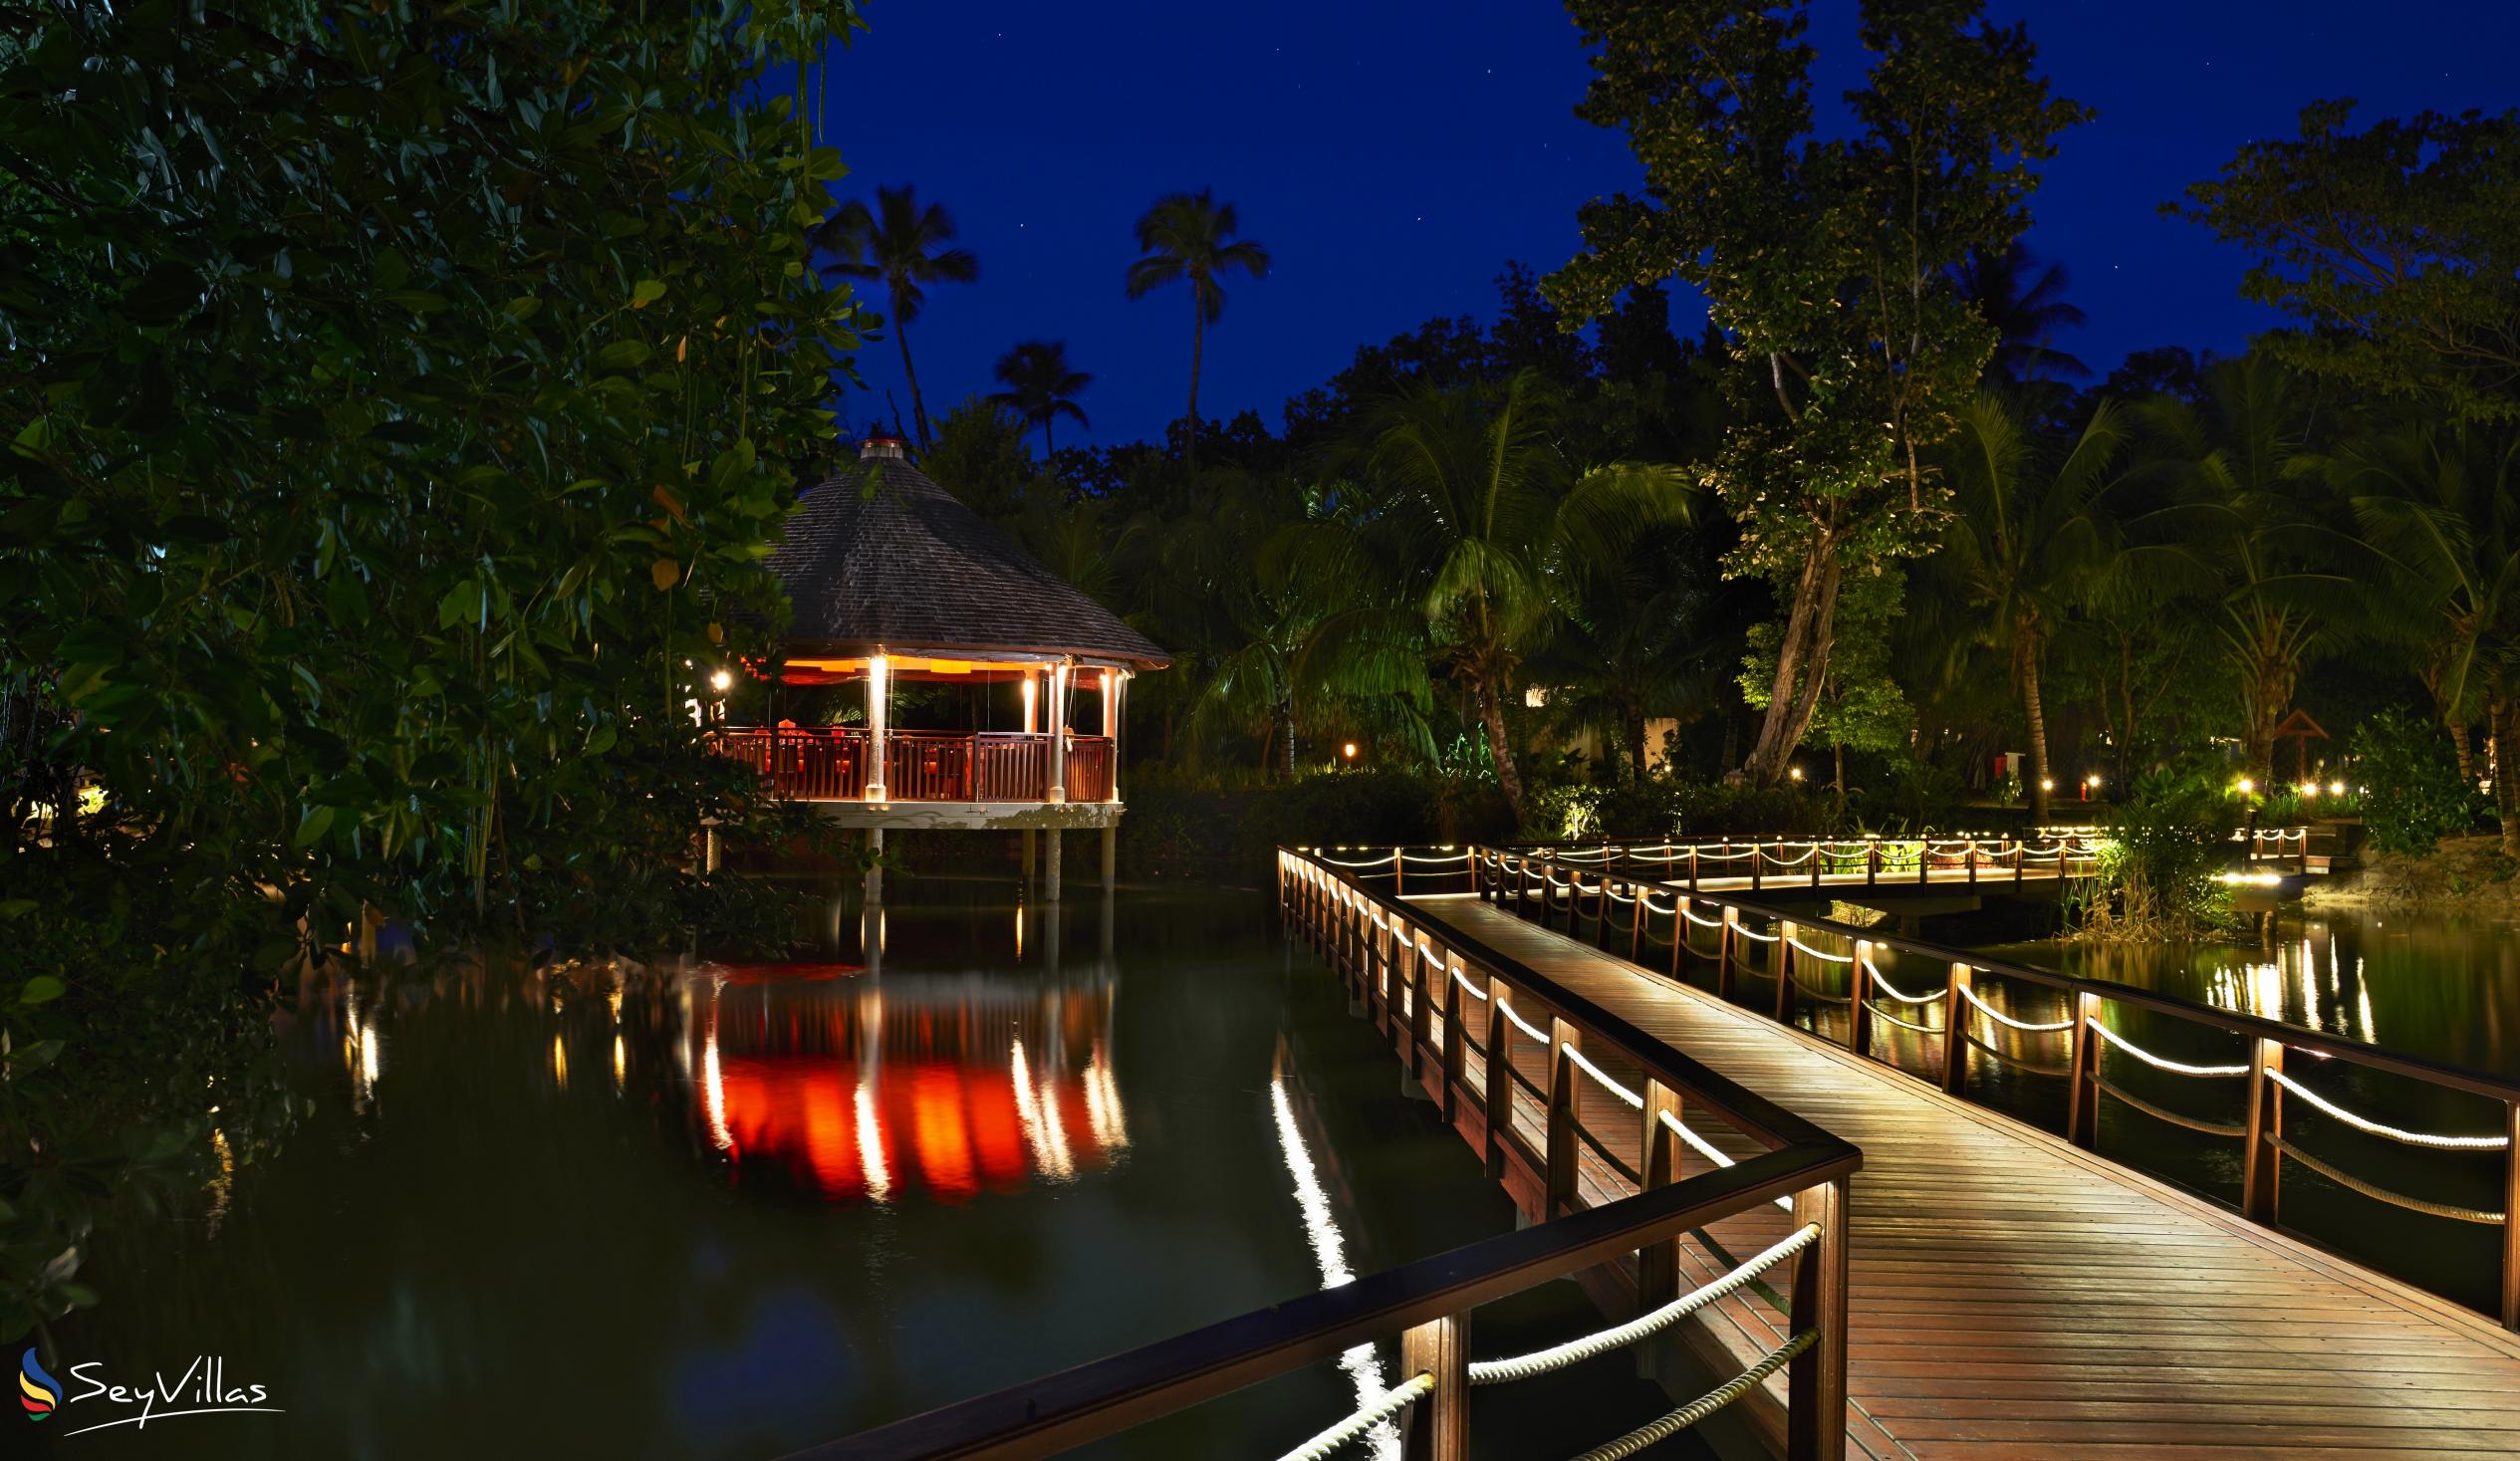 Foto 12: Hilton Seychelles Labriz Resort & Spa - Aussenbereich - Silhouette Island (Seychellen)